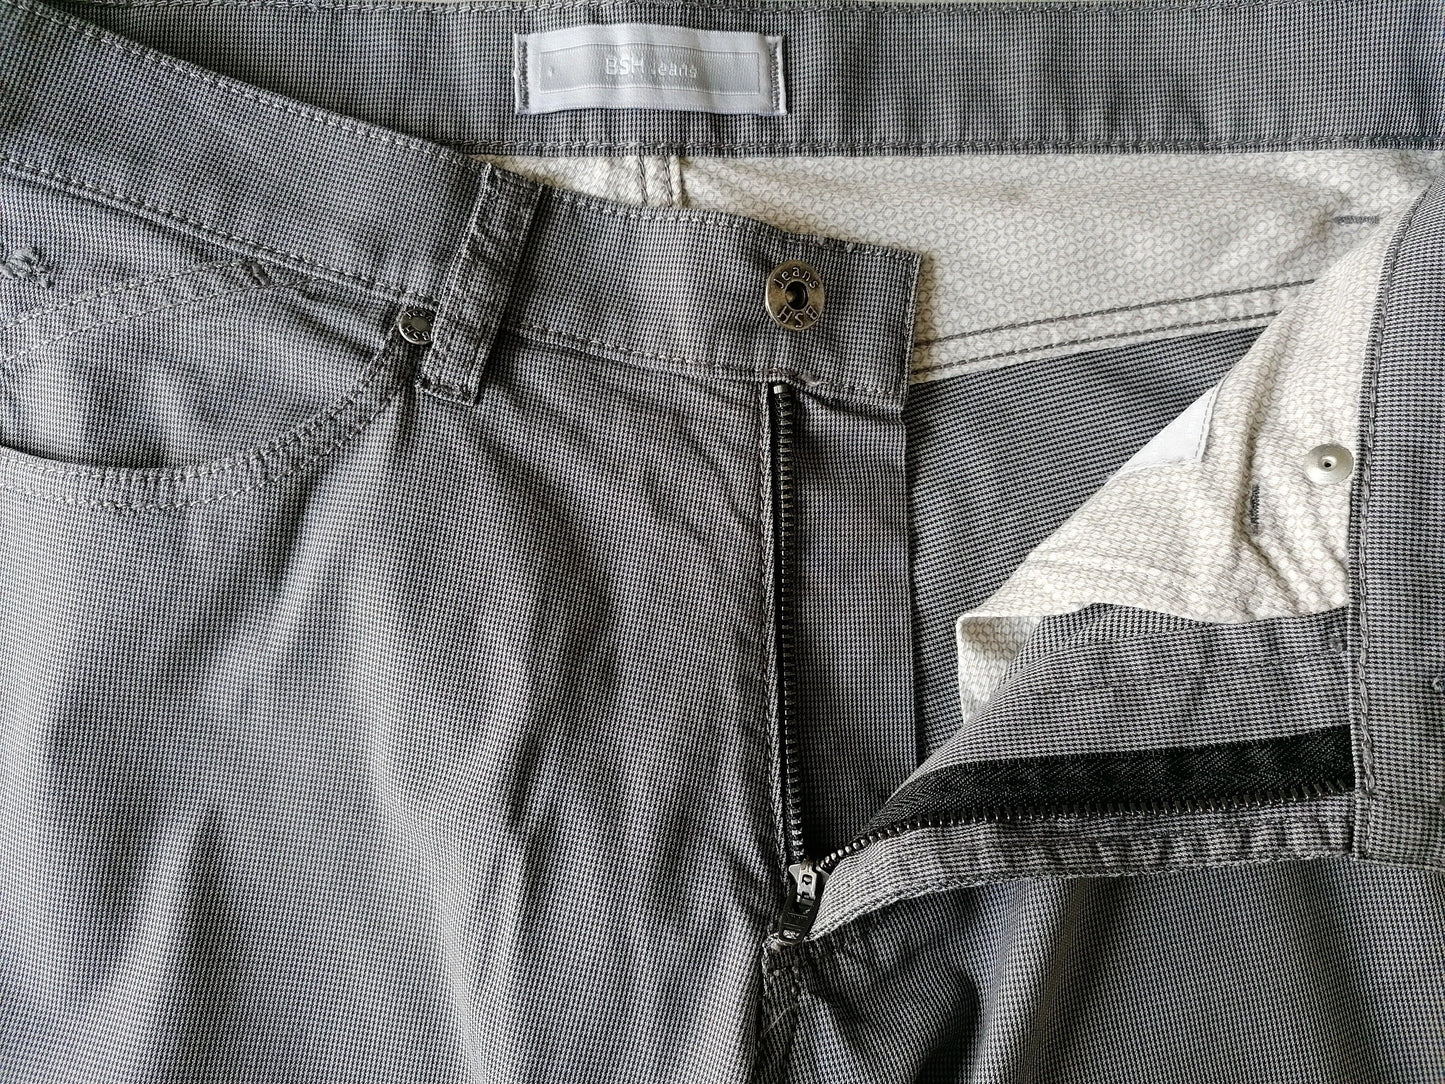 BSH jeans broek. Grijs motief. Maat W30 - L26 - EcoGents